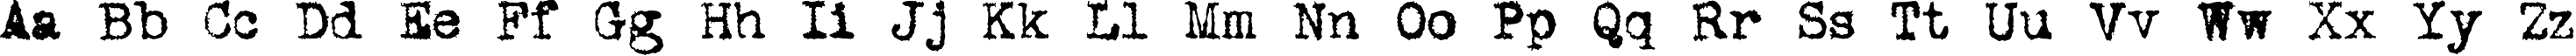 Пример написания английского алфавита шрифтом DS VTCorona Cyr